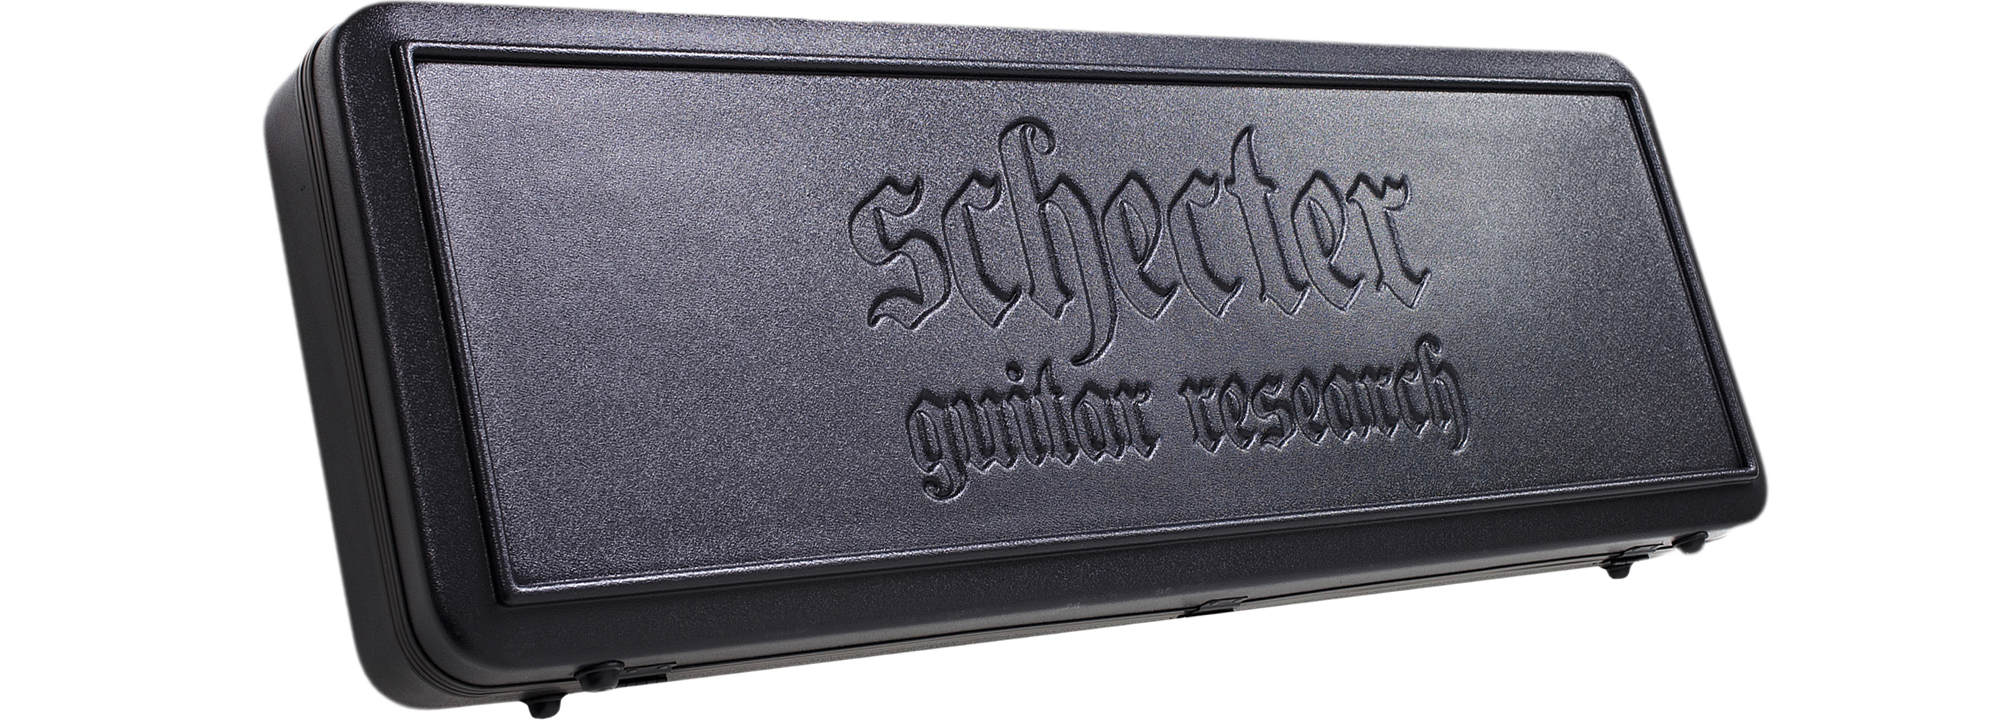 Schecter C-Shape Hardcase SGR-1C SKU 1620 - The Guitar World